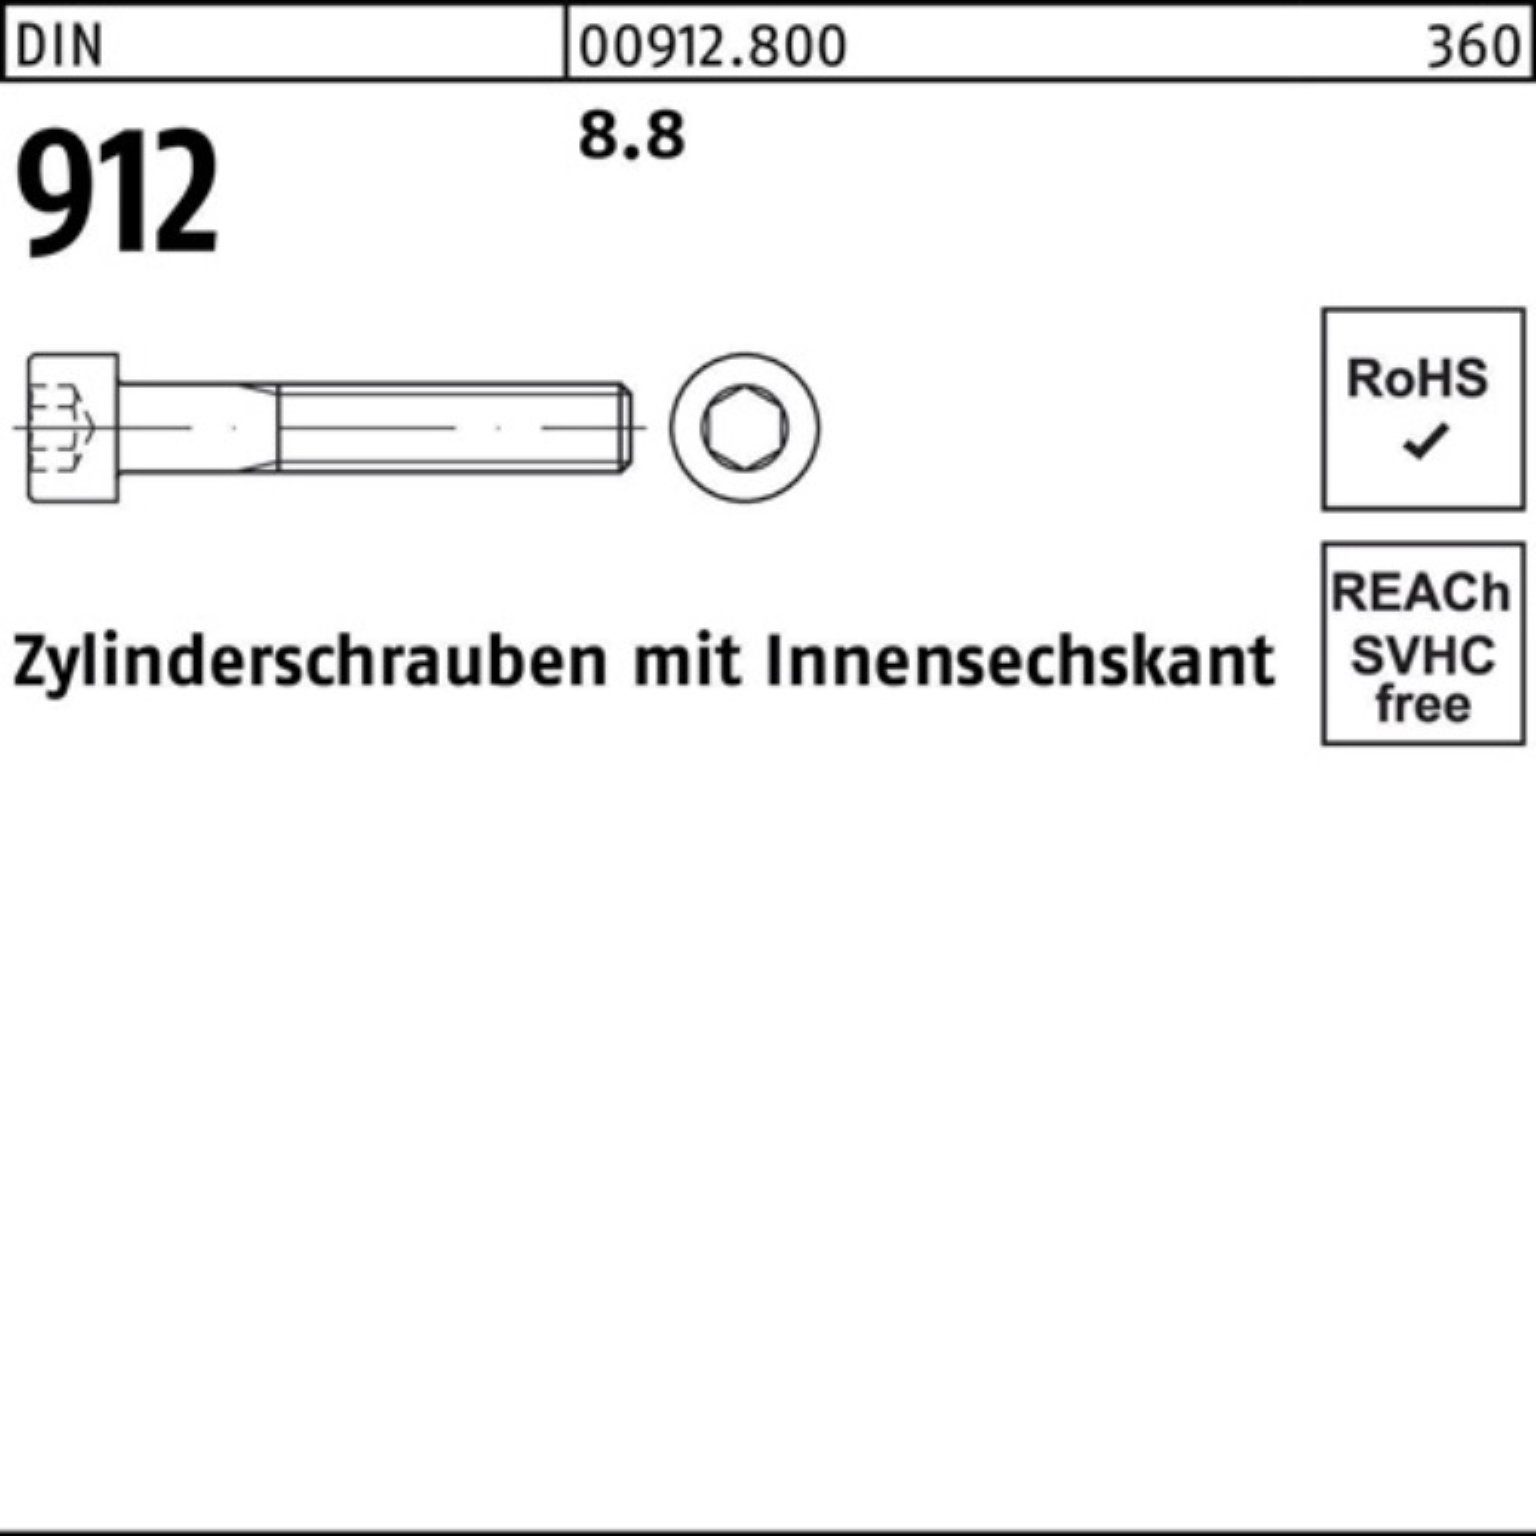 M4x Pack DIN Zylinderschraube 20 DI 912 Zylinderschraube 8.8 500 Reyher Stück Innen-6kt 500er